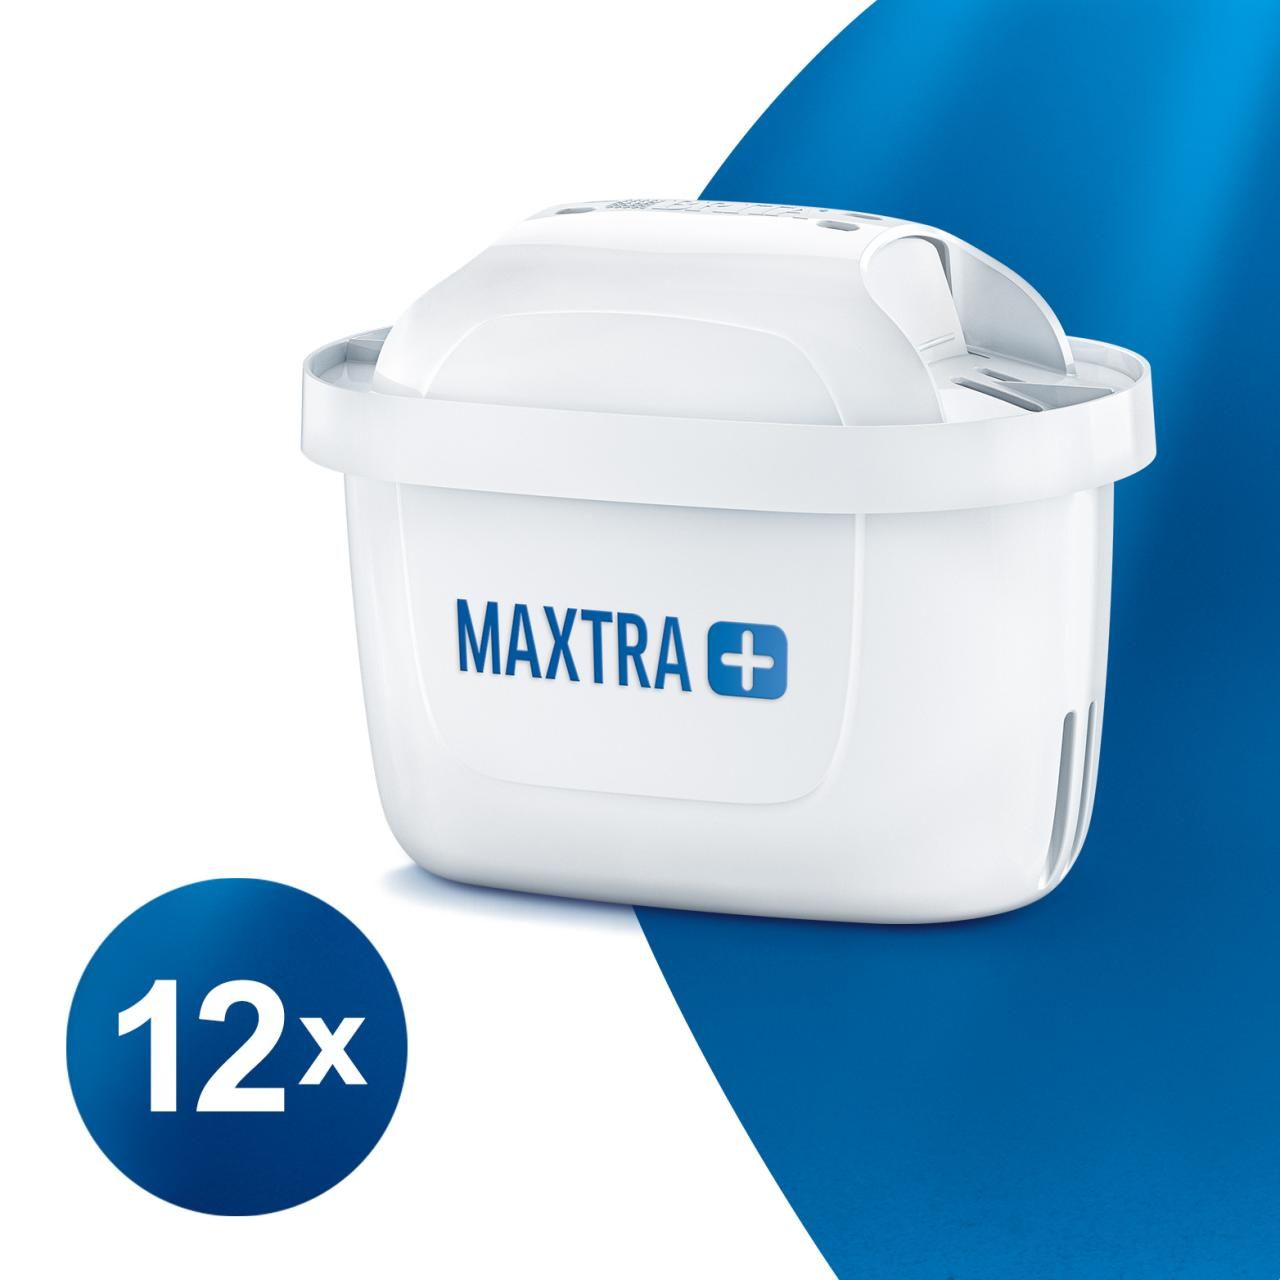 Maxtra + - cartouches filtrantes d'eau - brita - 12 cartouches_0